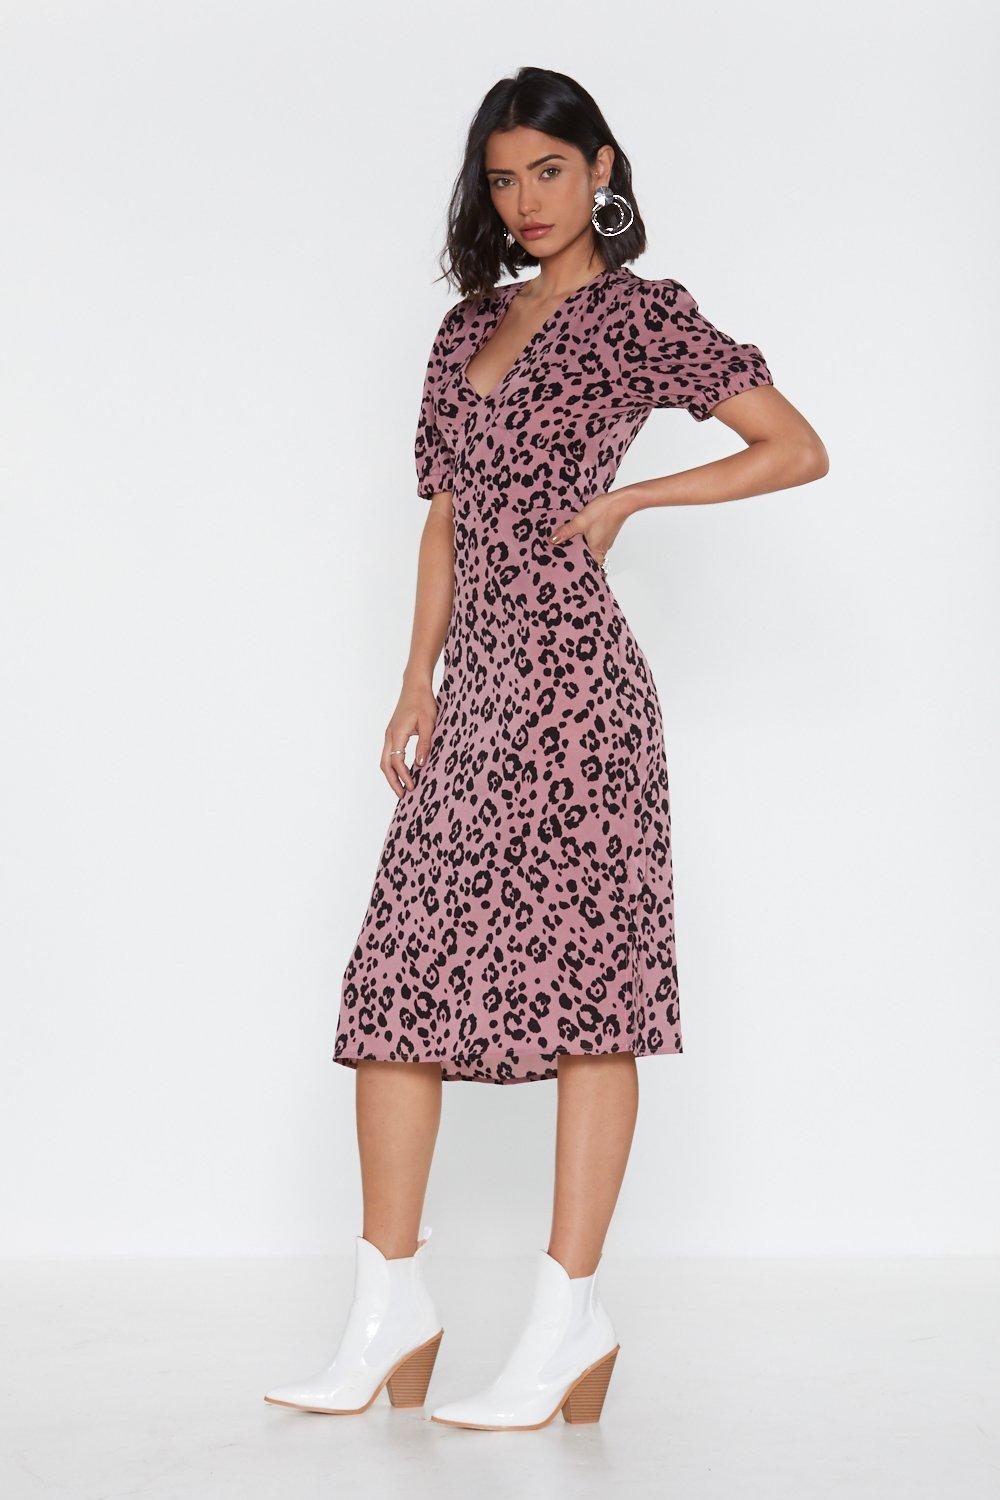 lilac leopard print dress